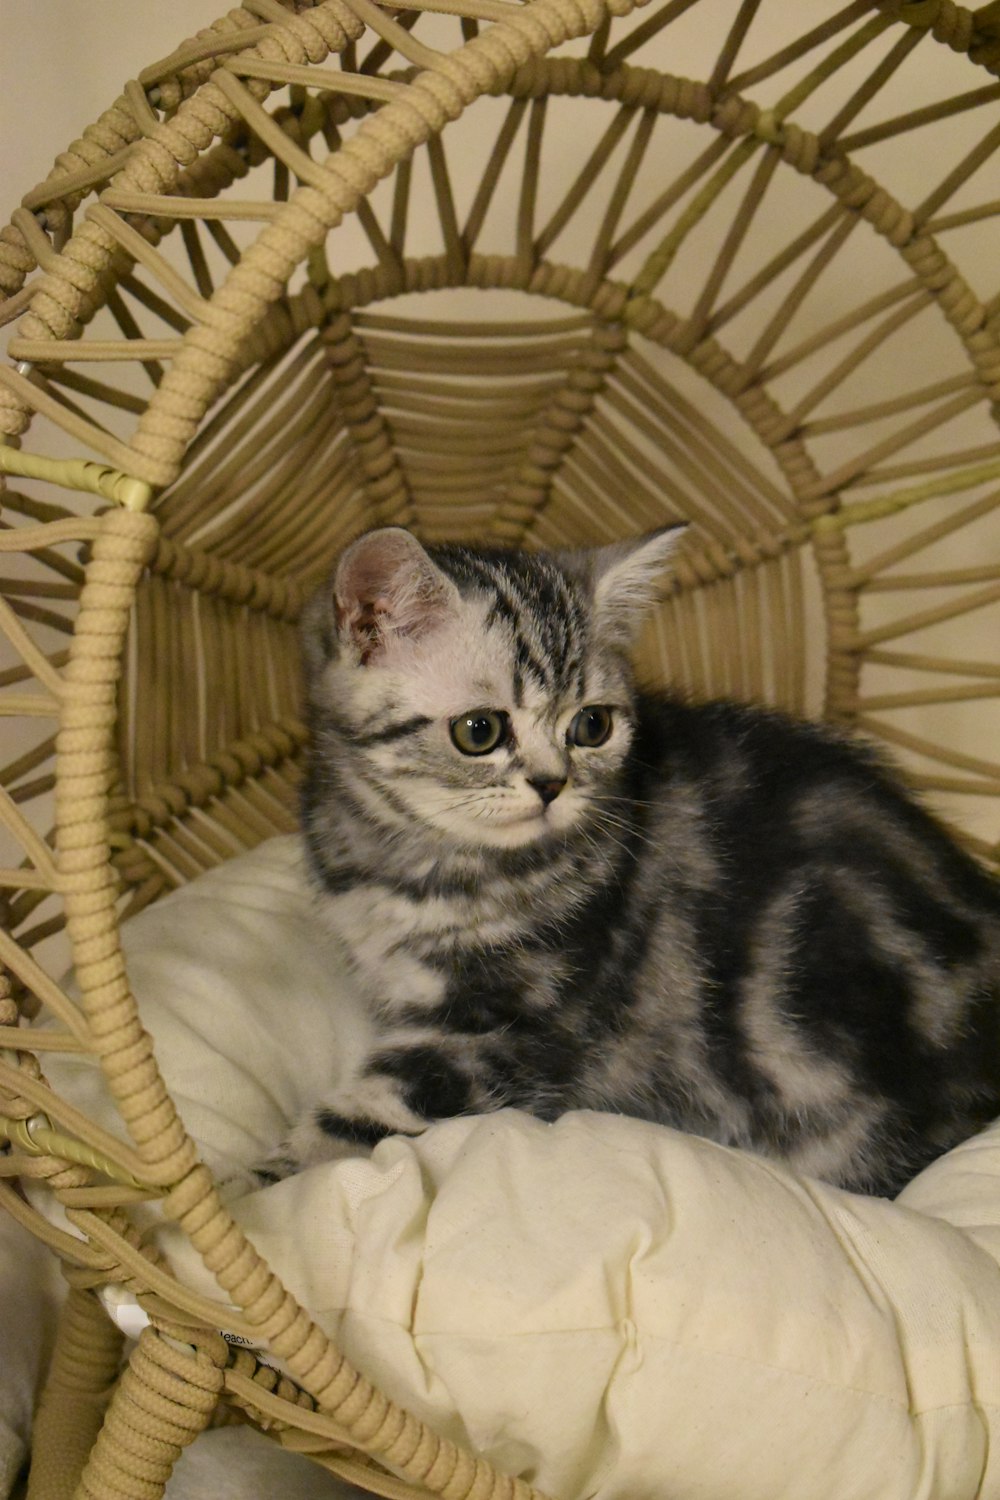 a cat is sitting in a wicker basket